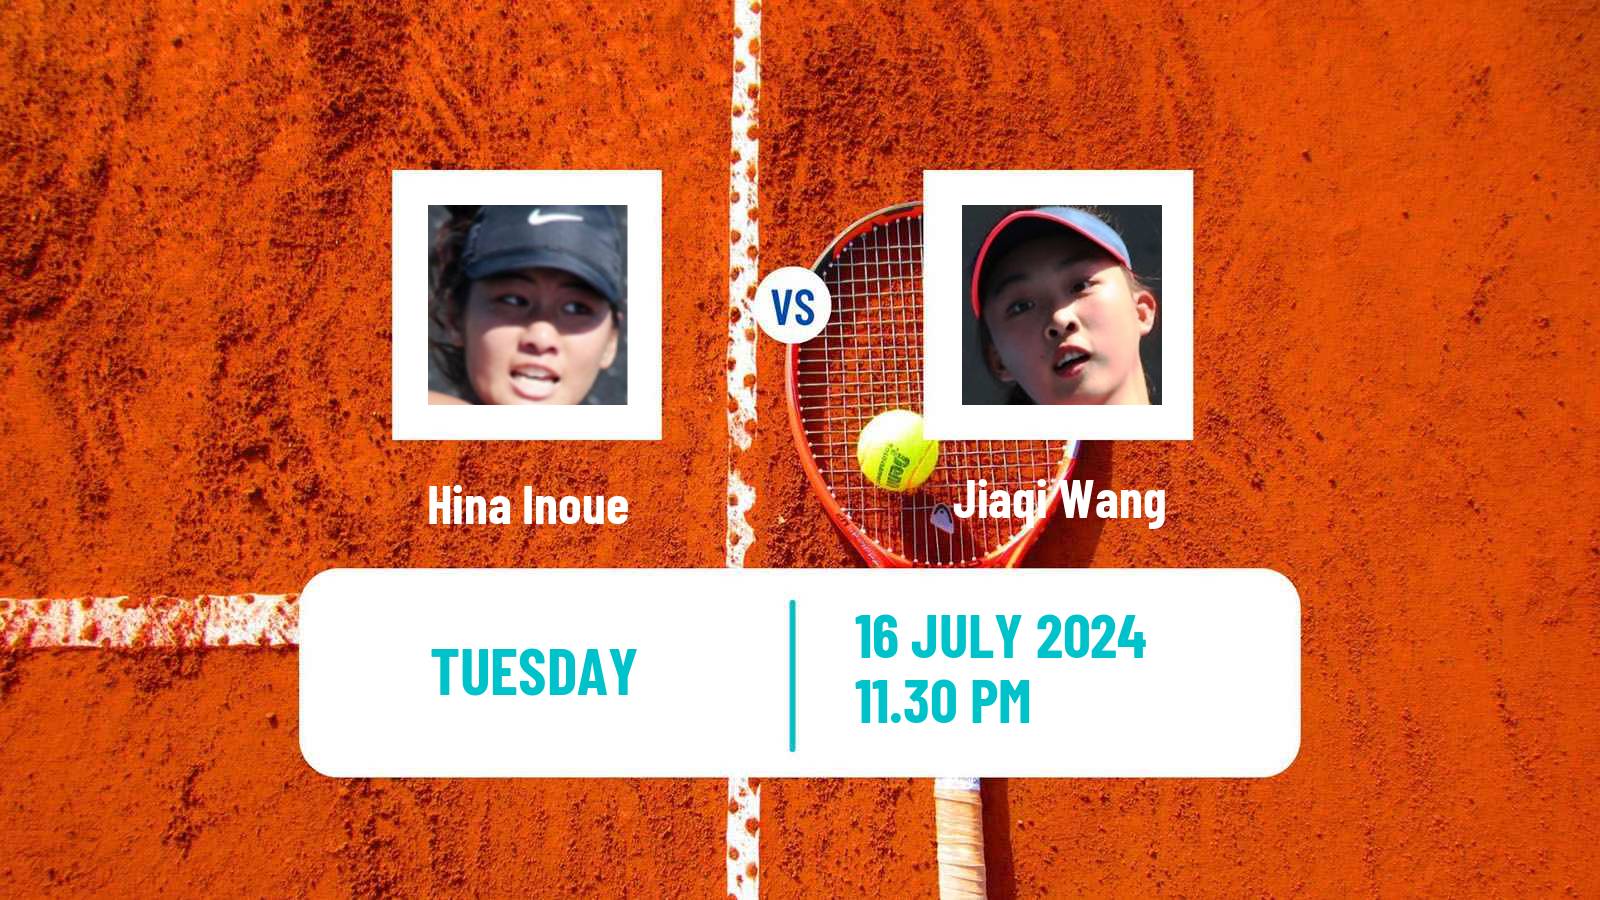 Tennis ITF W35 Tianjin 2 Women Hina Inoue - Jiaqi Wang